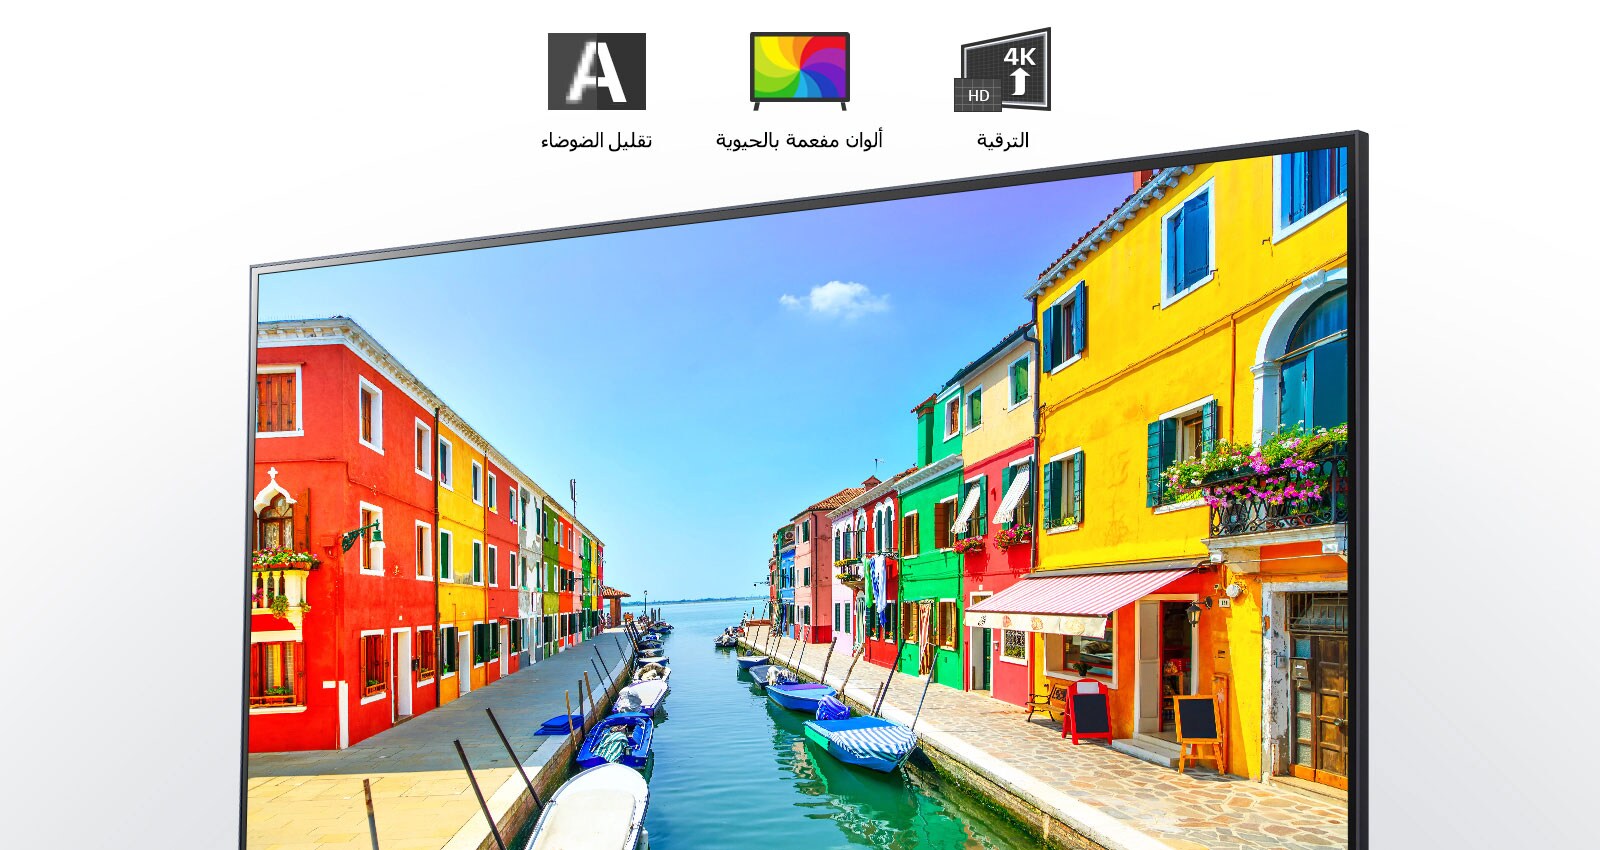 شاشة تلفزيون تعرض مشهدا لمدينة ساحلية تتميز فيها البنايات بطلاء متعدد الألوان كما ترسو القوارب الصغيرة في ميناء طويل وضيق. 